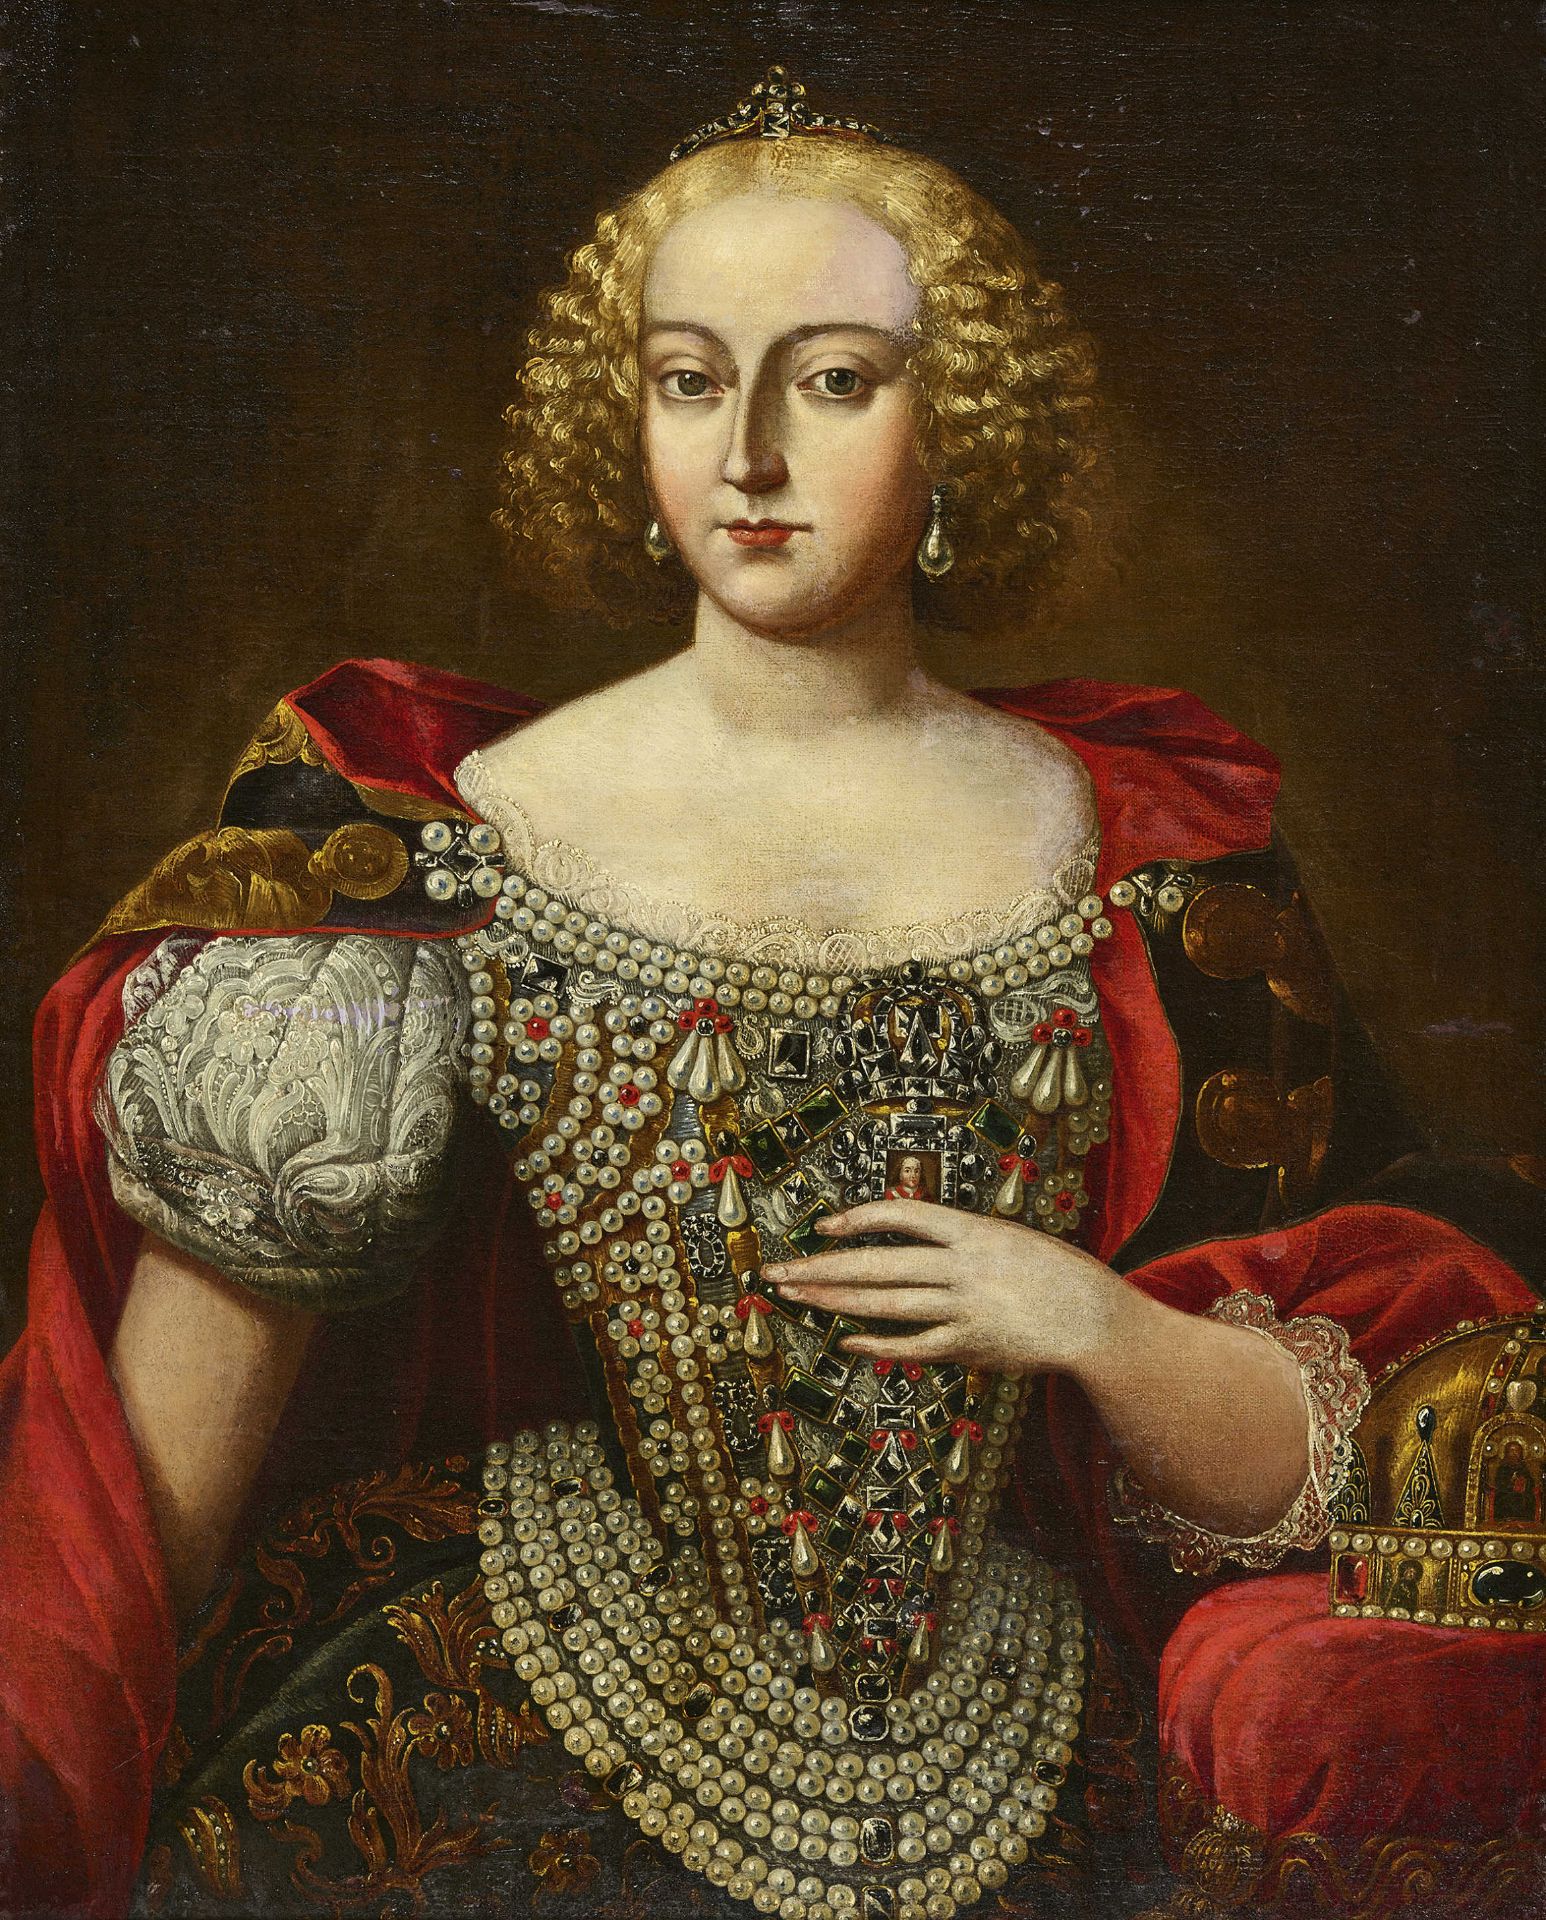 ÖSTERREICH/UNGARN, 18. JH.: Porträt von Maria Theresia im Krönungsornat.